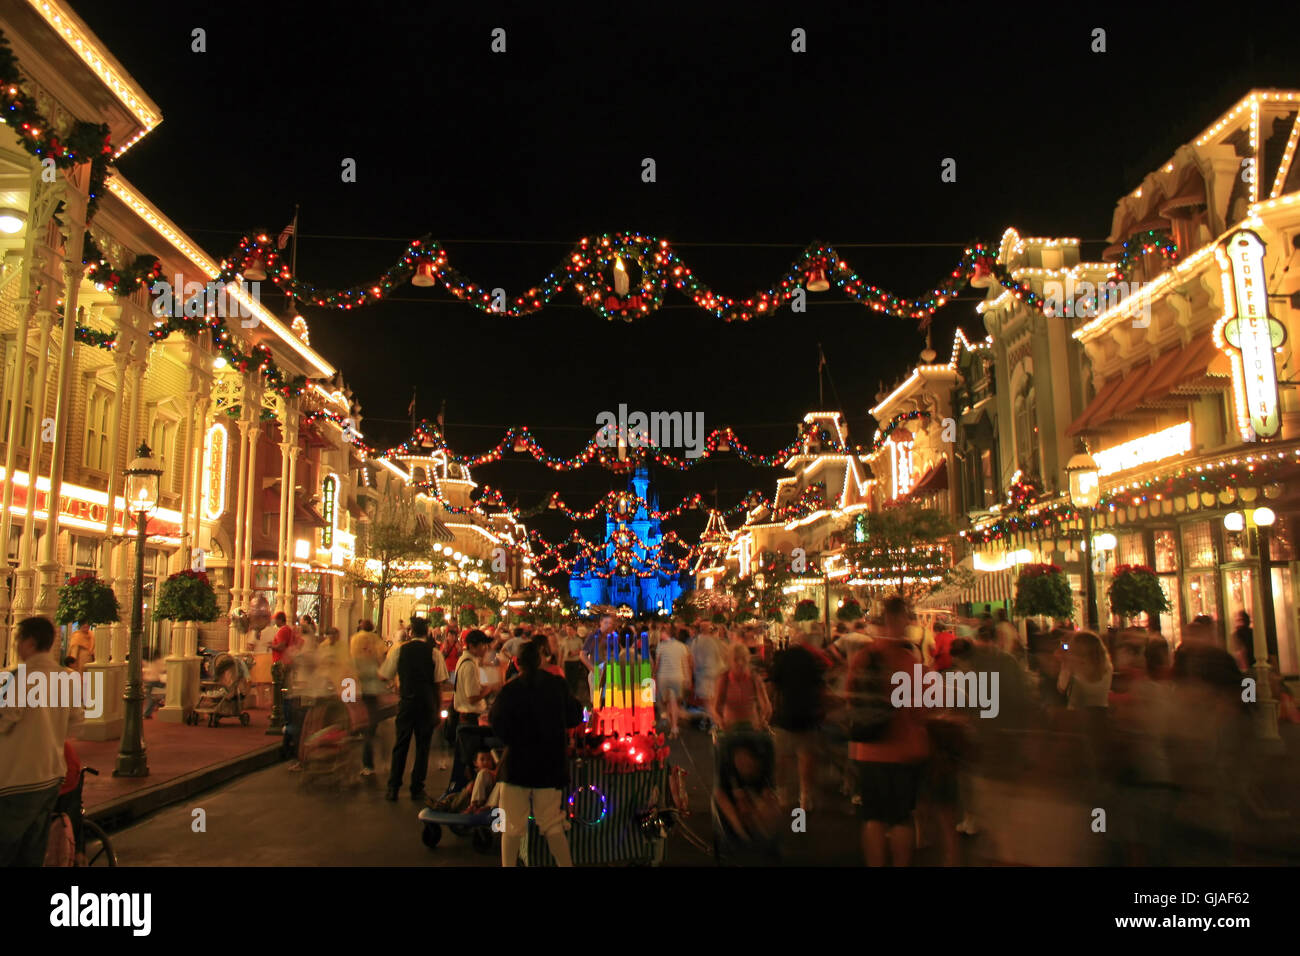 Orlando, Floride. Janvier 3rd, 2007. Main Street USA au Magic Kingdom à Walt Disney World avec des décorations de Noël. Banque D'Images